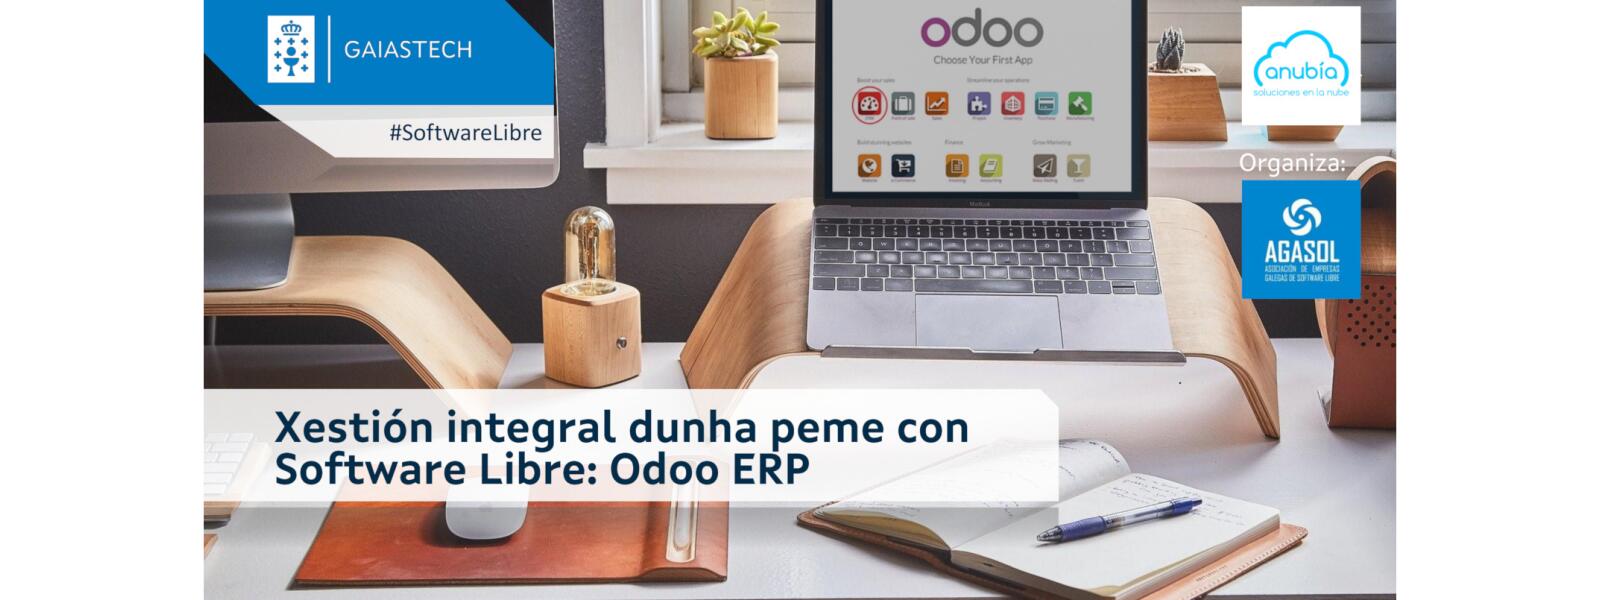 Xestión integral dunha peme con Software Libre: Odoo ERP